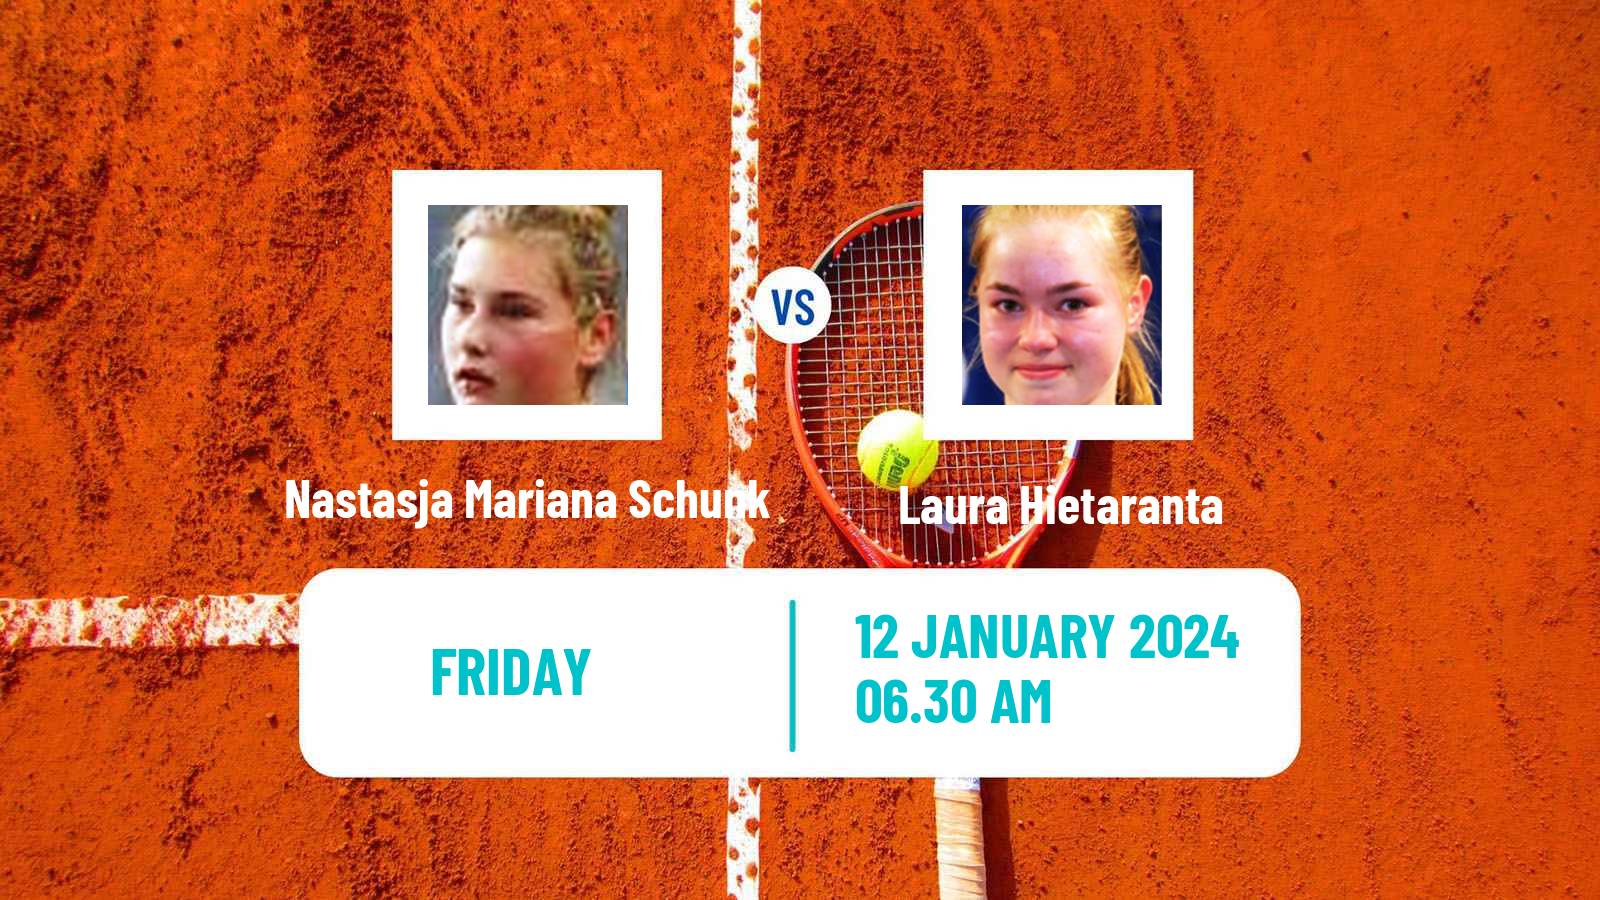 Tennis ITF W35 Loughborough Women Nastasja Mariana Schunk - Laura Hietaranta